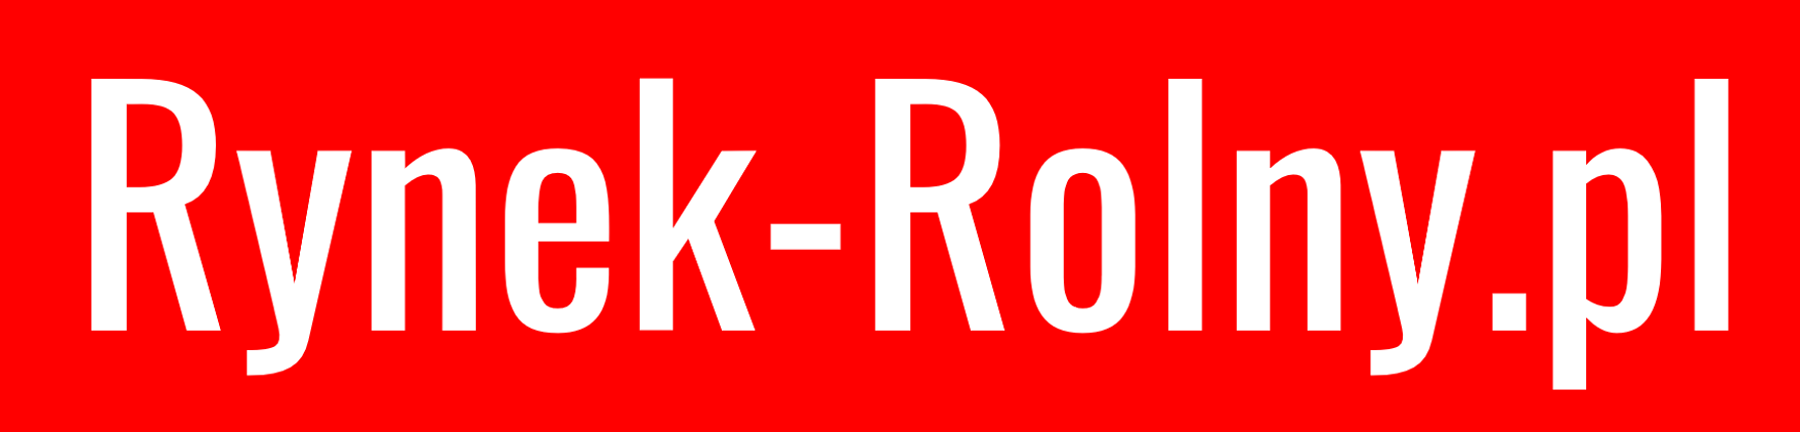 logo-rynek-rolny.png (43 KB)